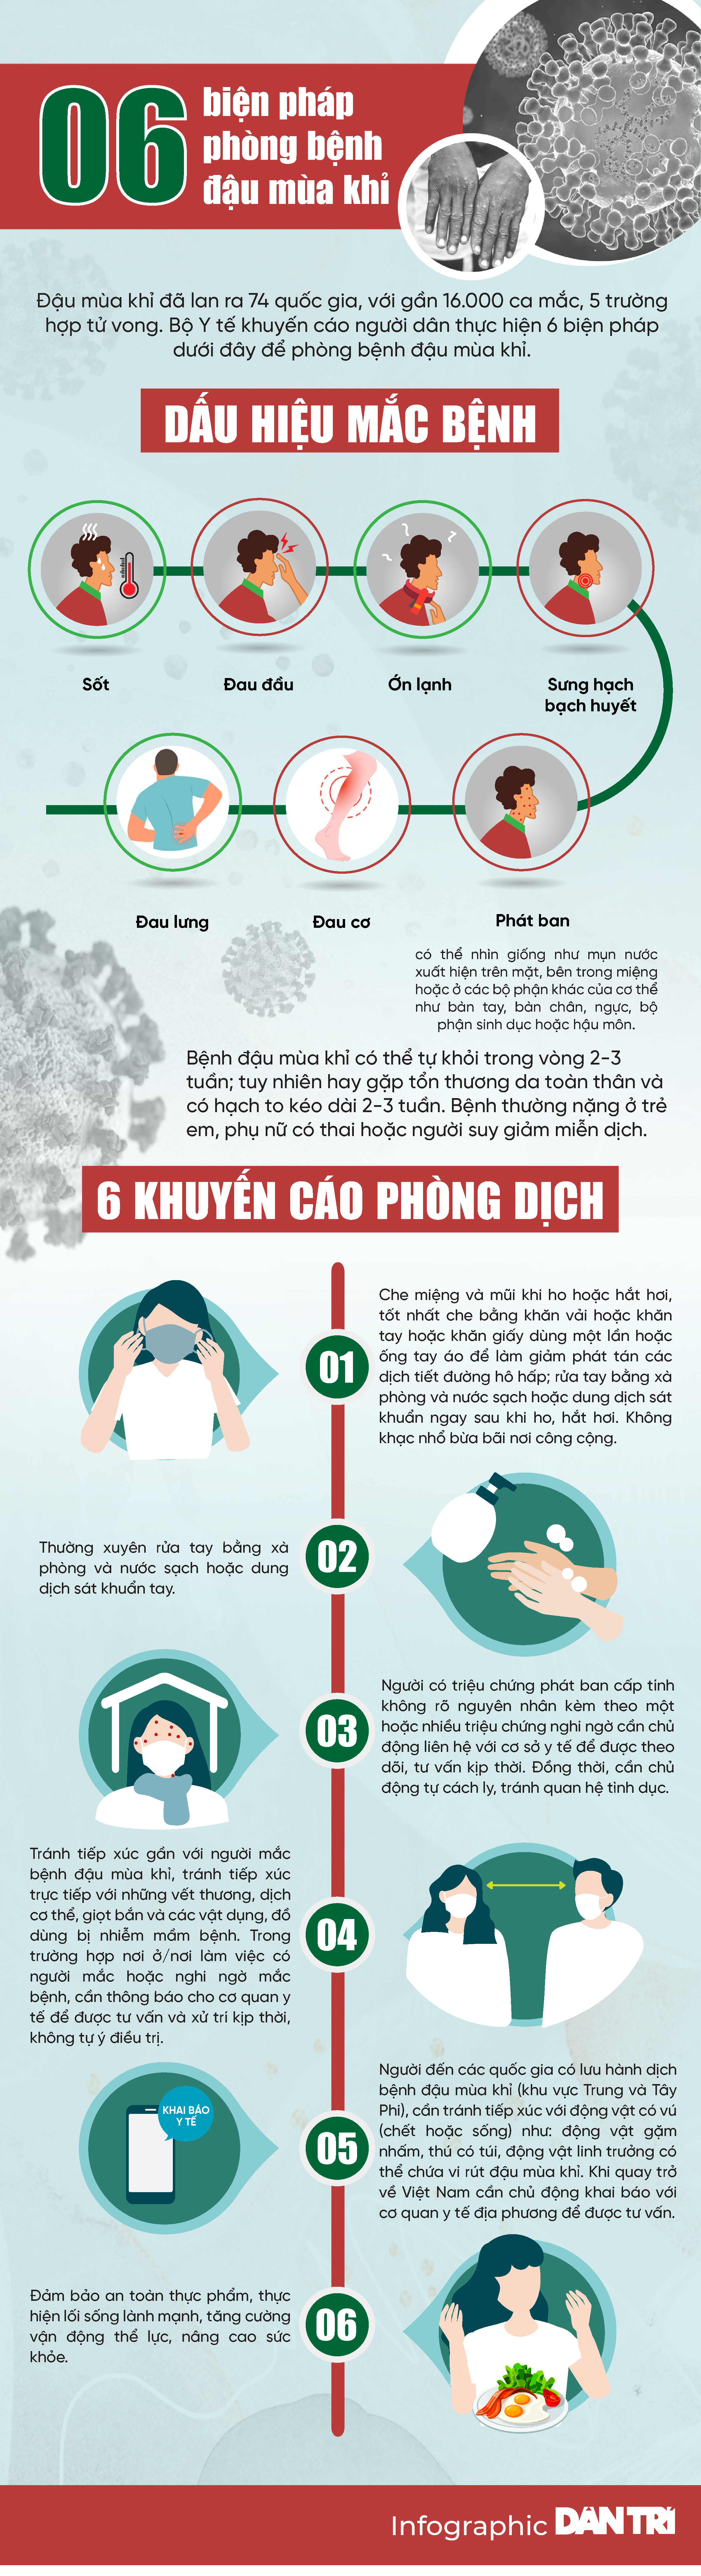 Thực hiện ngay 6 khuyến cáo sau để ngăn chặn bệnh đậu mùa khỉ-1